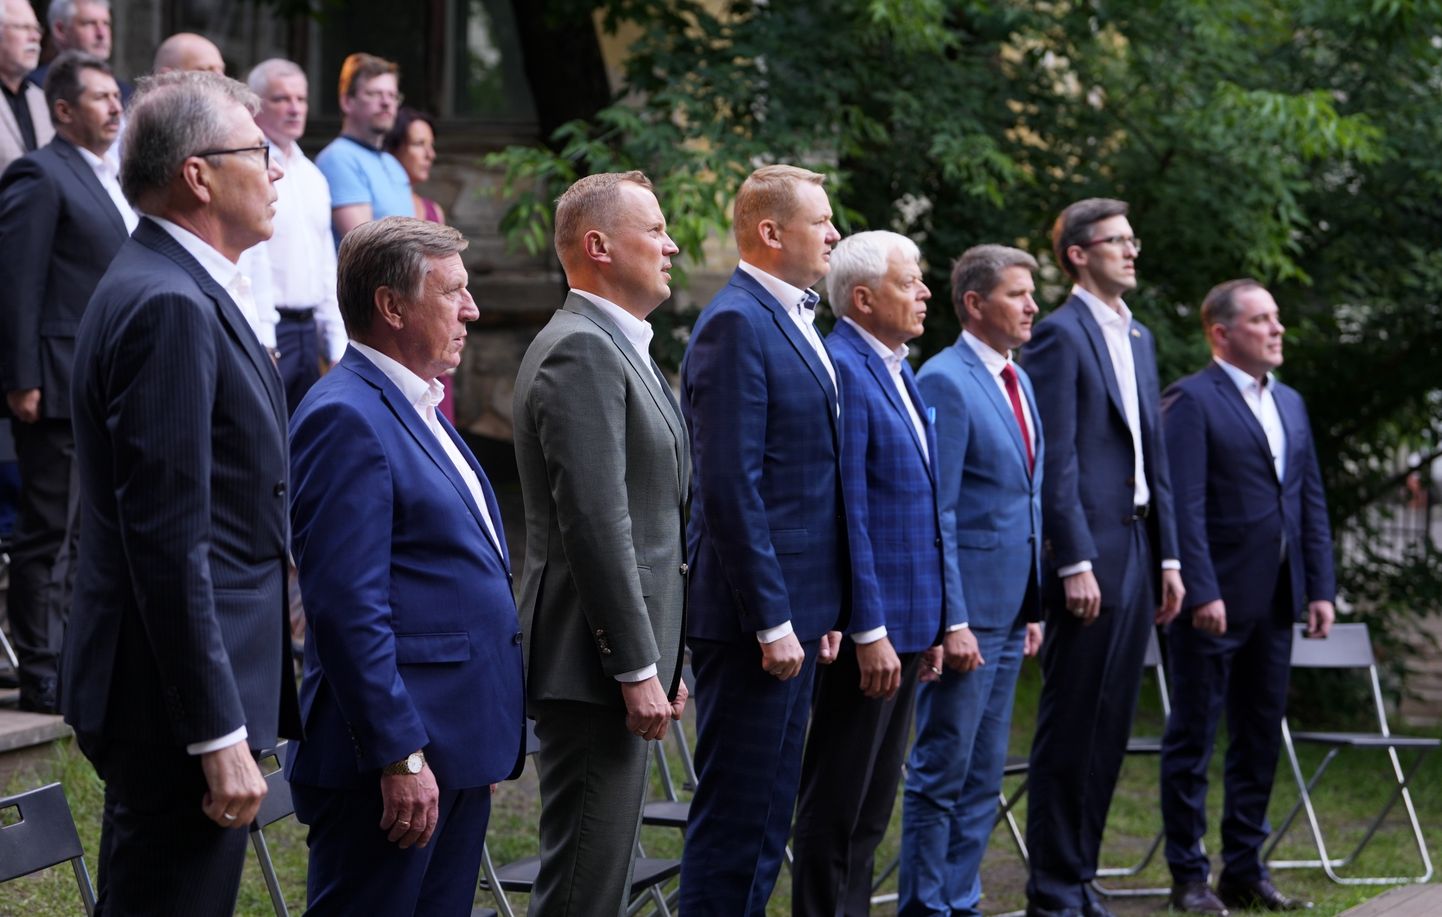 Politisko partiju apvienības "Apvienotais saraksts" - Latvijas Zaļās partijas, Latvijas Reģionu Apvienības un Liepājas partijas Ministru prezidenta amata kandidāts Uldis Pīlēns (no kreisās), saraksta līderis Kurzemē, Saeimas deputāts Māris Kučinskis, saraksta līderis Zemgalē, Saeimas deputāts Edgars Tavars, Liepājas partijas priekšsēdētājs Uldis Sesks, Latvijas Reģionu apvienības valdes loceklis, Ādažu novada domes priekšsēdētājs Māris Sprindžuks, partijas saraksta līderis Latgalē Juris Vilums un saraksta līderis Rīgā Didzis Šmits piedalās preses konferencē, kurā politisko partiju apvienība iepazīstina ar vēlēšanu saraksta līderiem.